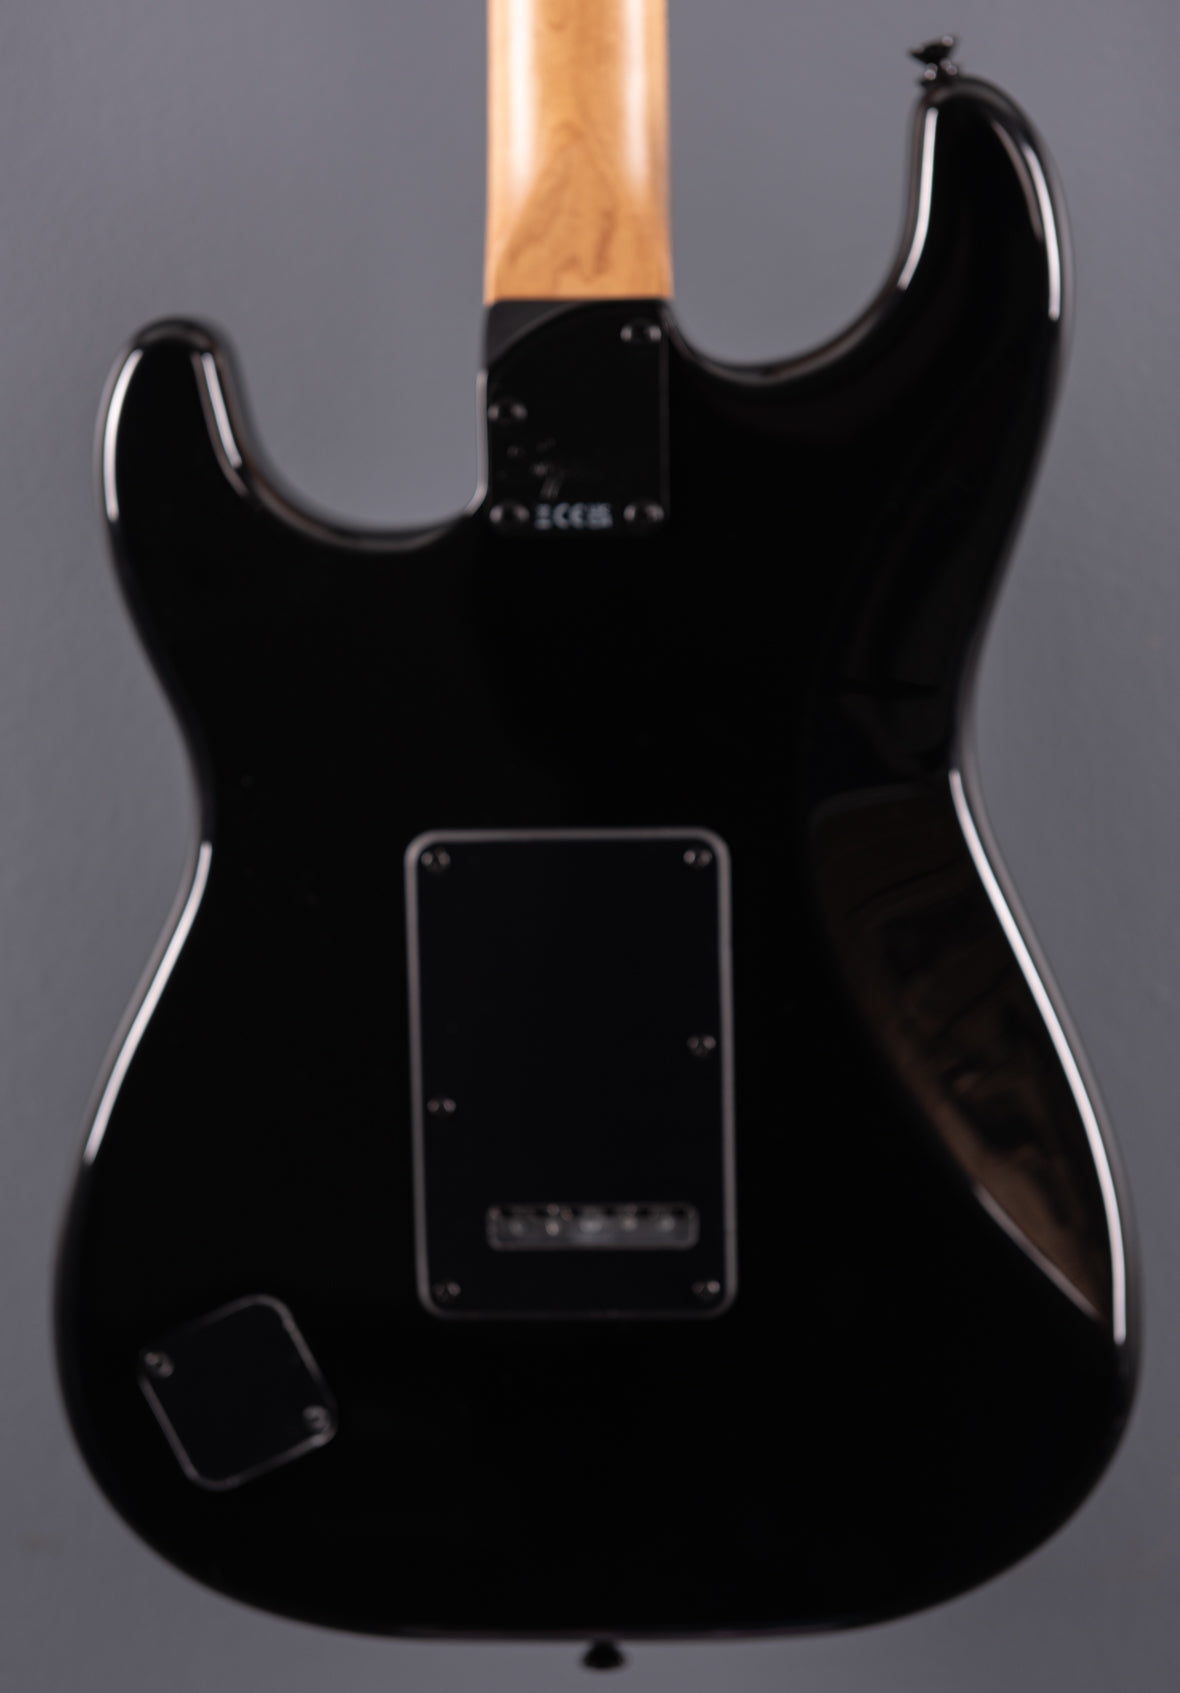 Contemporary Stratocaster Special - Black